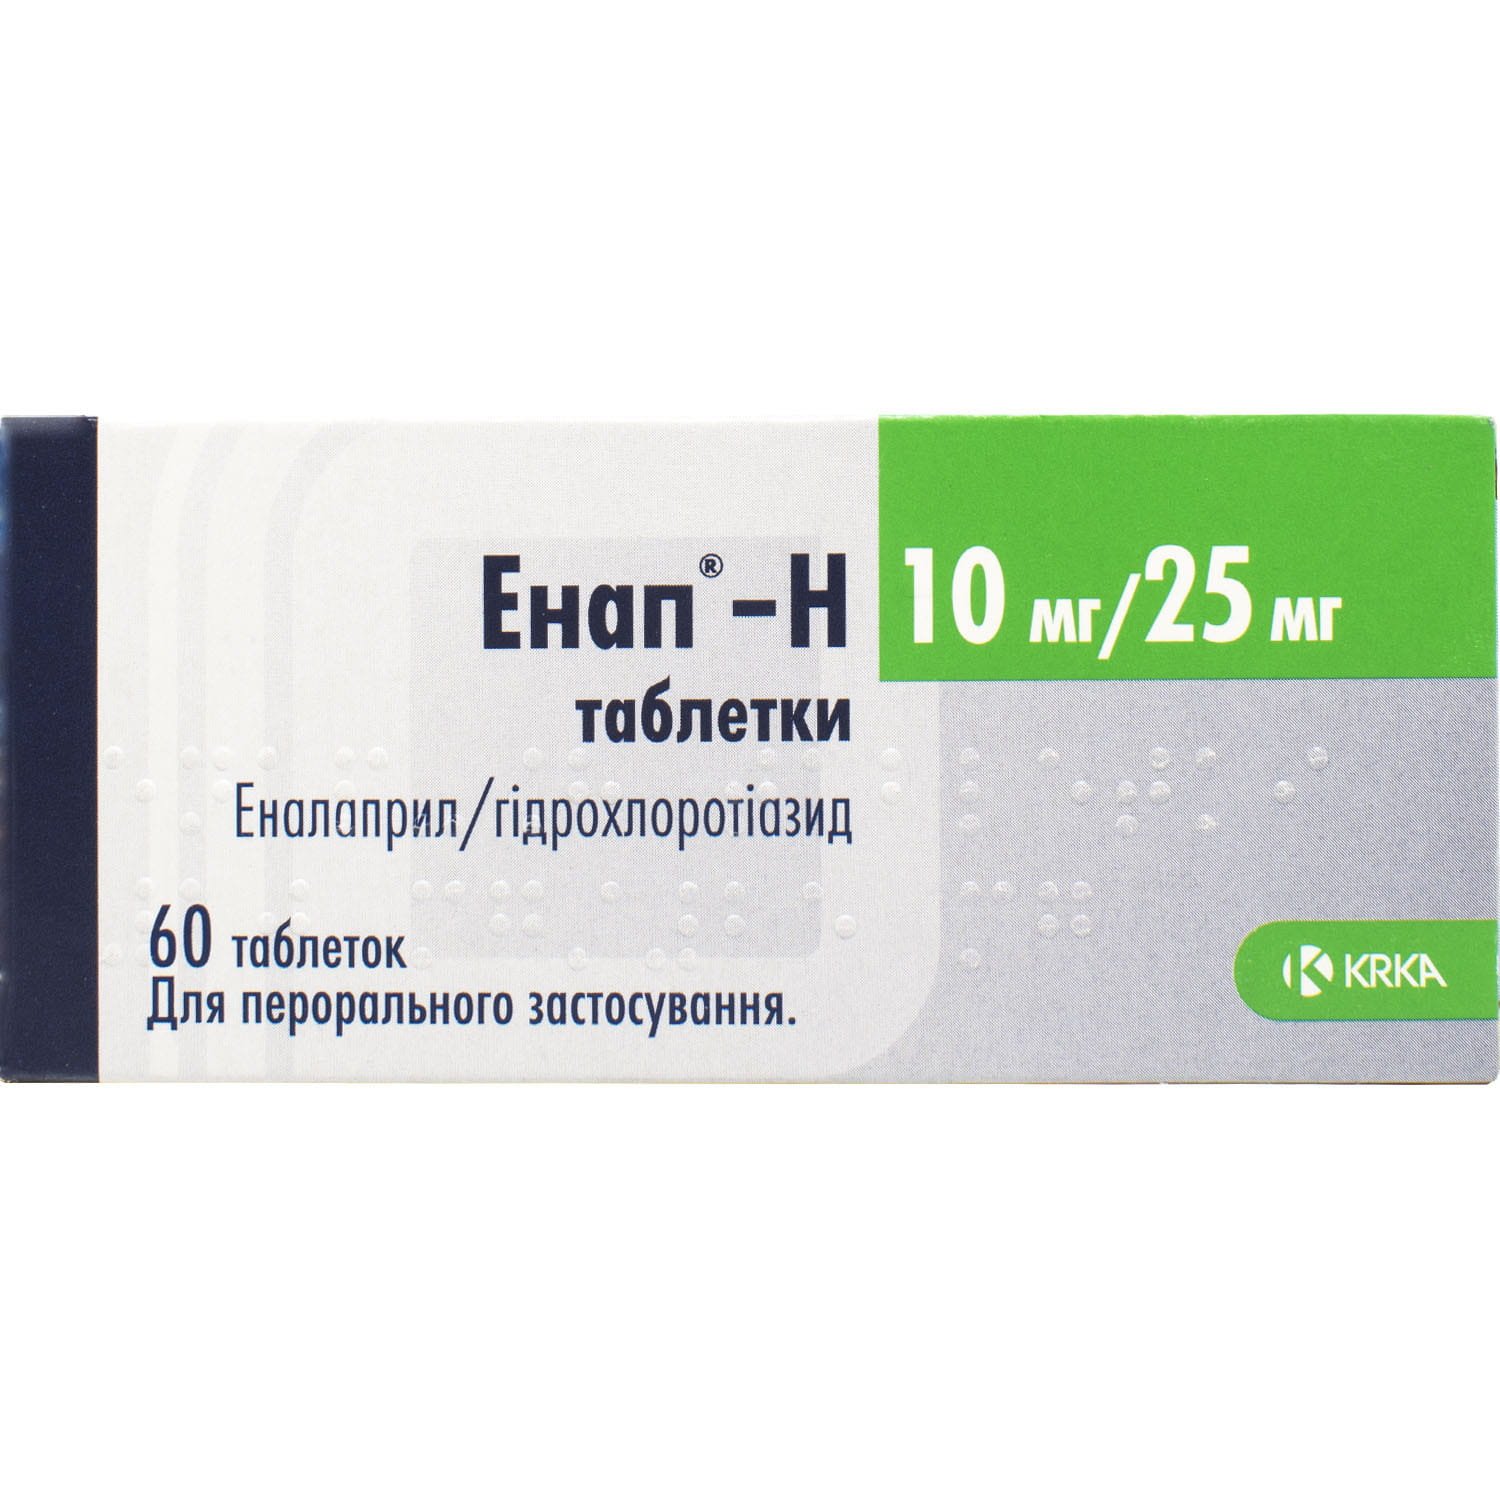 Энап H таблетки по 10 мг/25 мг, 60 шт.: инструкция, цена, отзывы .